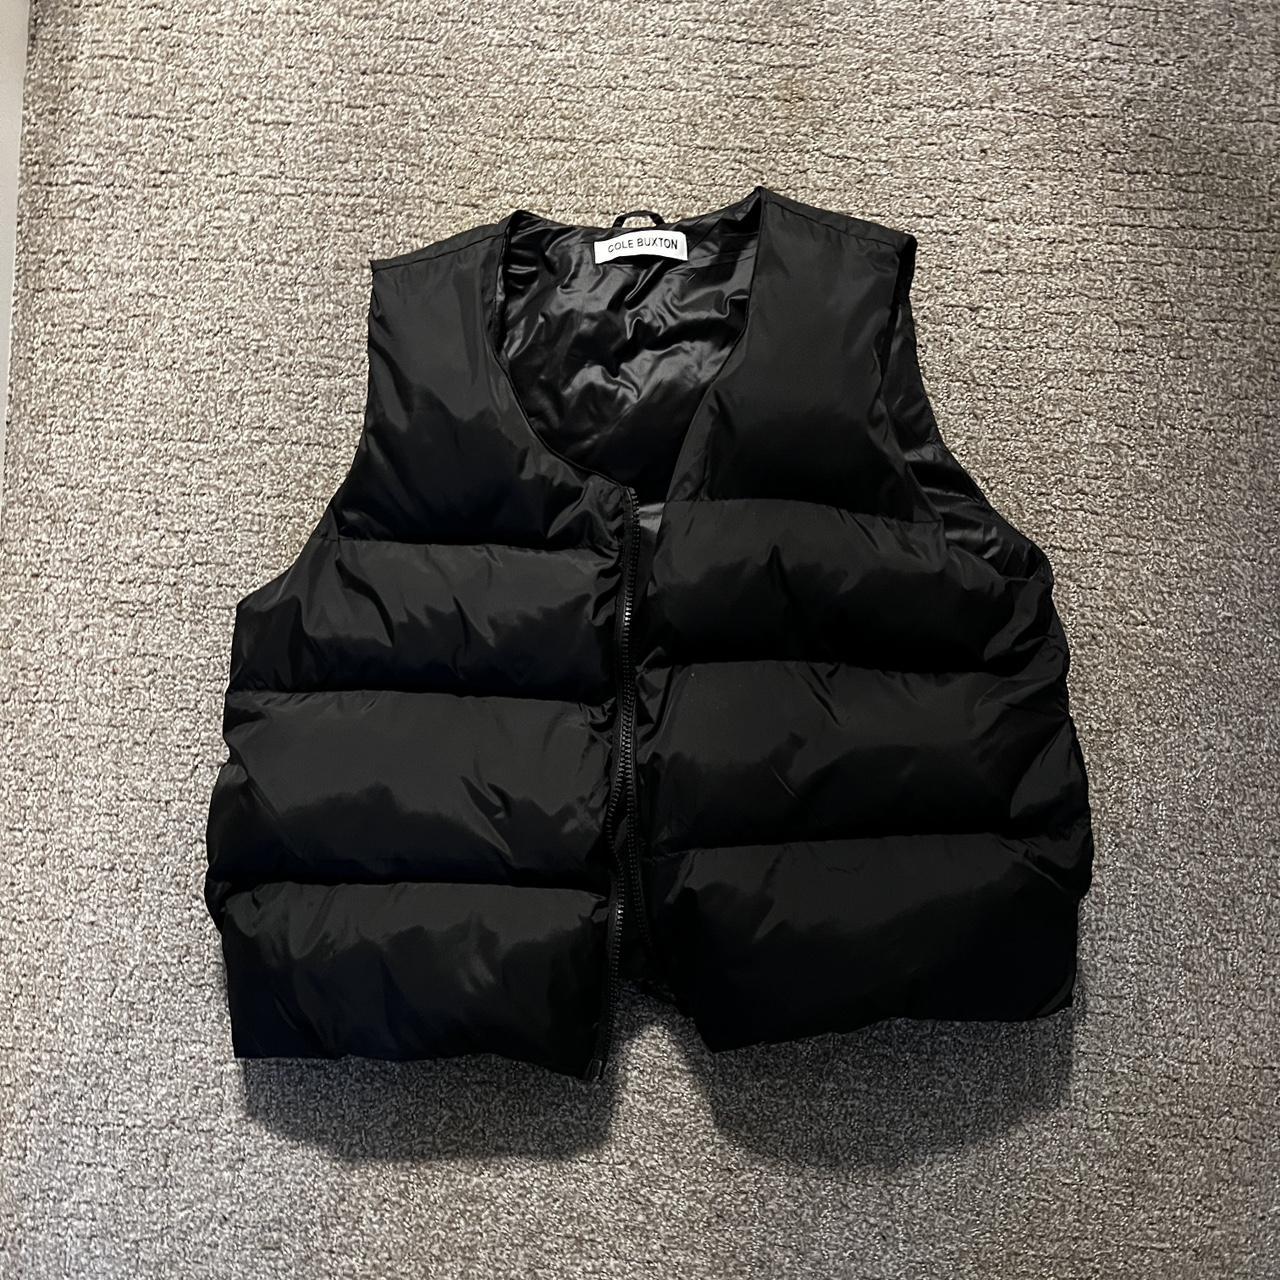 Cole buxton puffer vest Size M Good condition - Depop